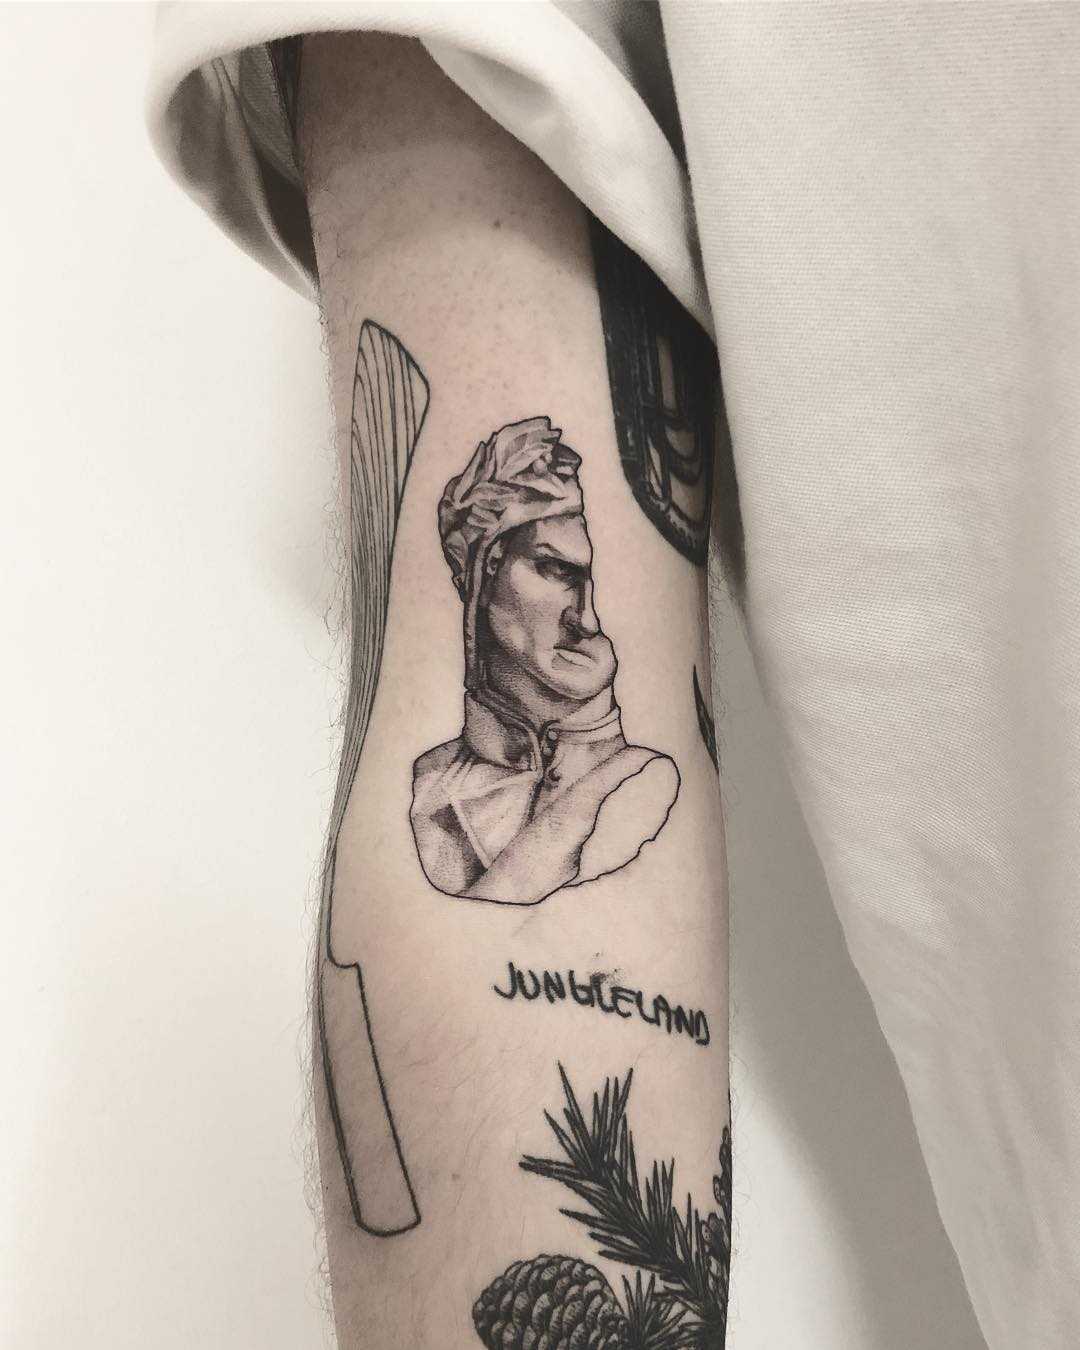 Dante tattoo